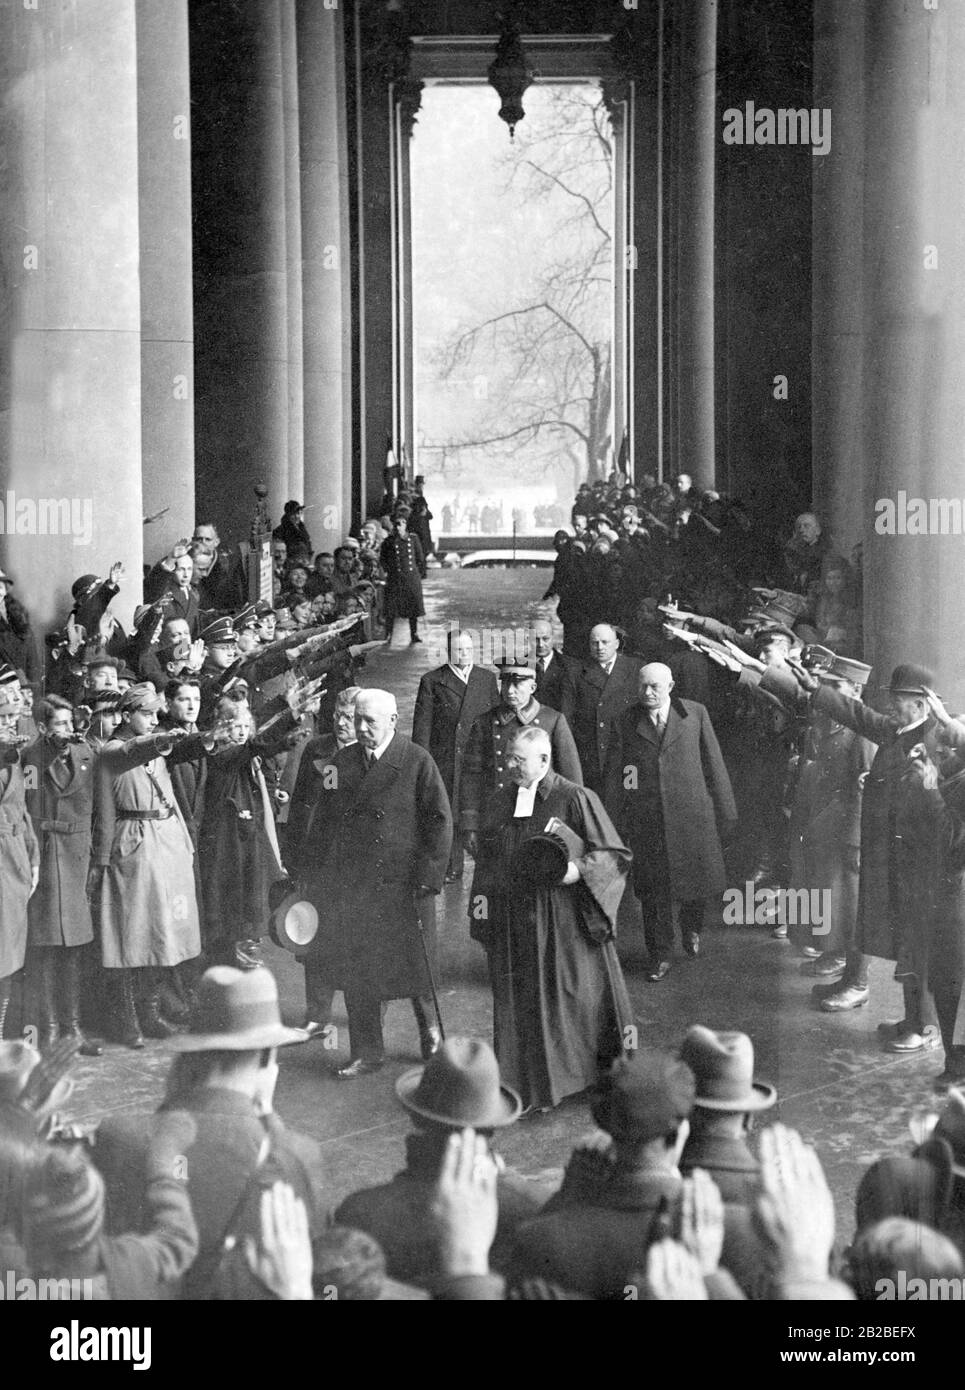 Paul von Hindenburgs bei einem Besuch der Potsdamer Garnisonskirche. Er und seine Gefährten, darunter Otto Meissner (links, leicht verdeckt), werden von einer Menschenmenge empfangen, die den Nazi-Salut ausmache. Hitler ist bereits Reichskanzler. Stockfoto